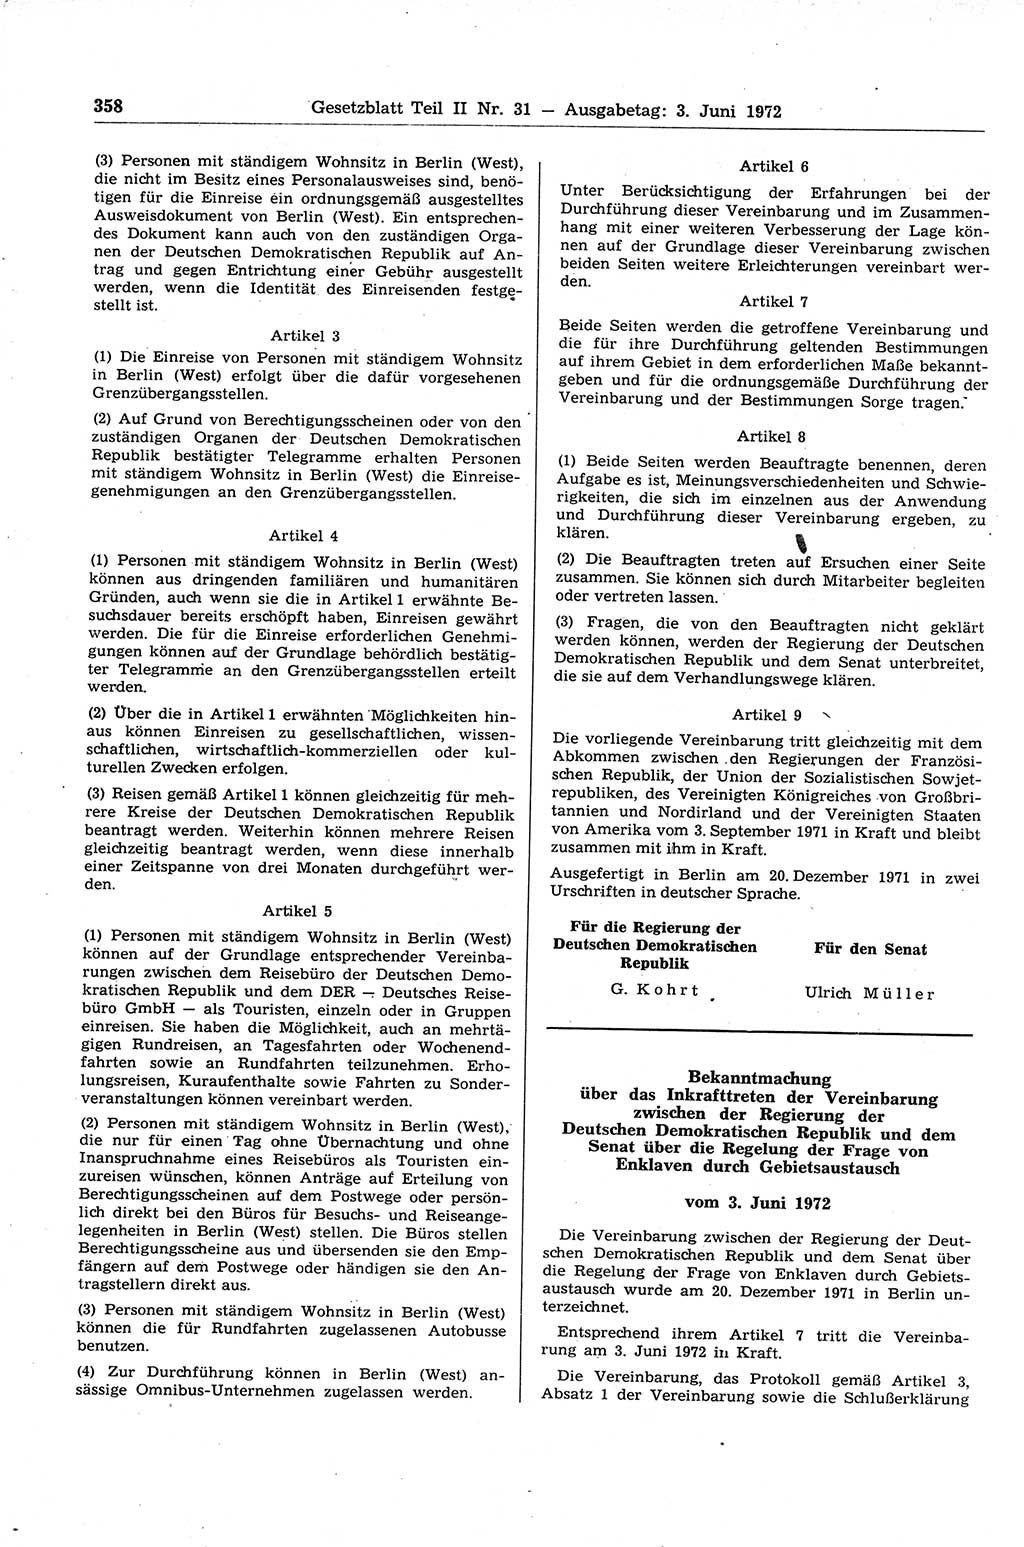 Gesetzblatt (GBl.) der Deutschen Demokratischen Republik (DDR) Teil ⅠⅠ 1972, Seite 358 (GBl. DDR ⅠⅠ 1972, S. 358)